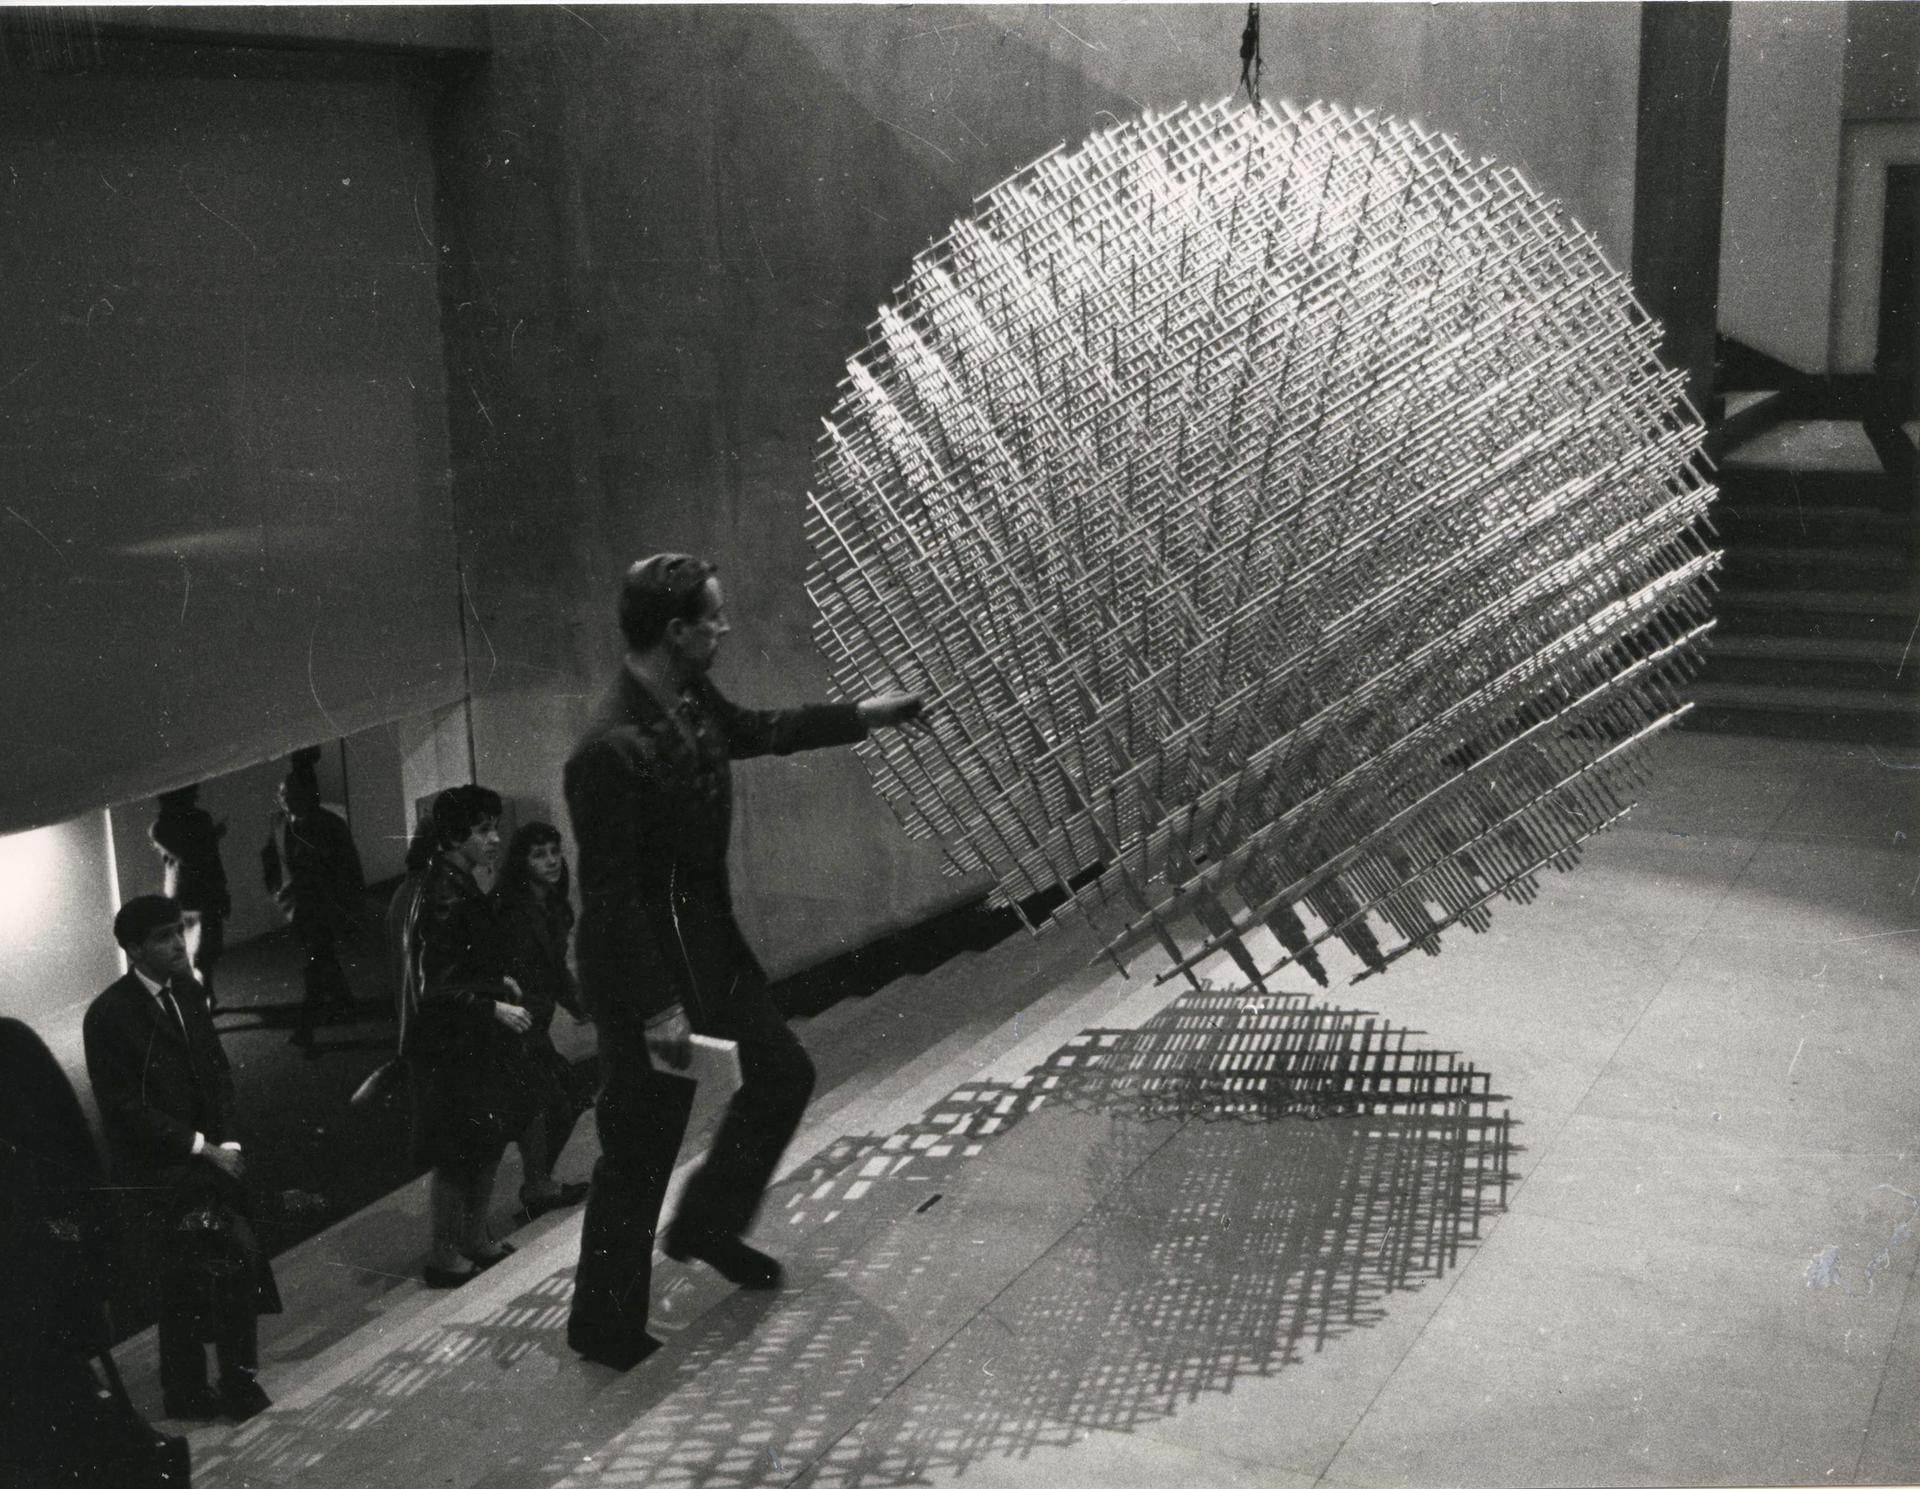 François Morellet, Sphères-trames (Sphere-Weft), 1962, Installation view, IIIe Biennale de Paris, Musée d'Art Moderne de la Ville de Paris, 1963 Courtesy of Studio Morellet